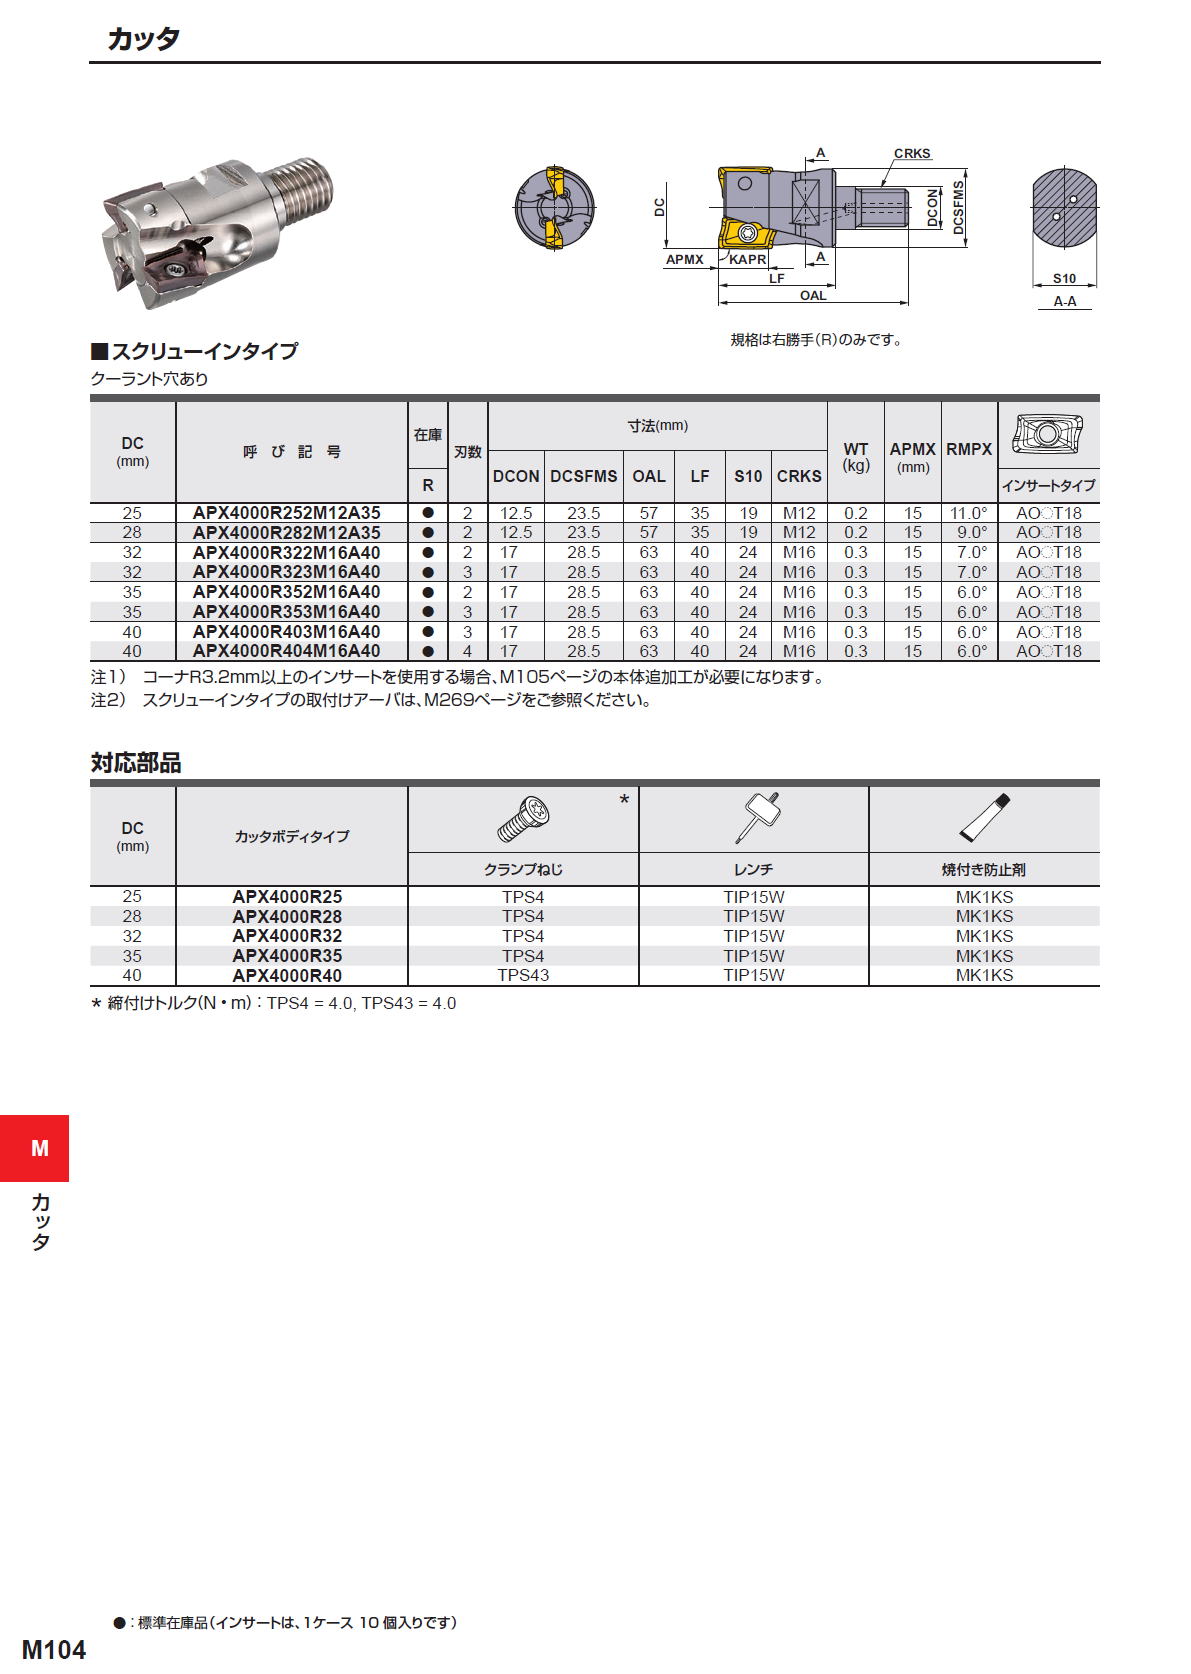 三菱マテリアル カッタ 多機能用 APX4000